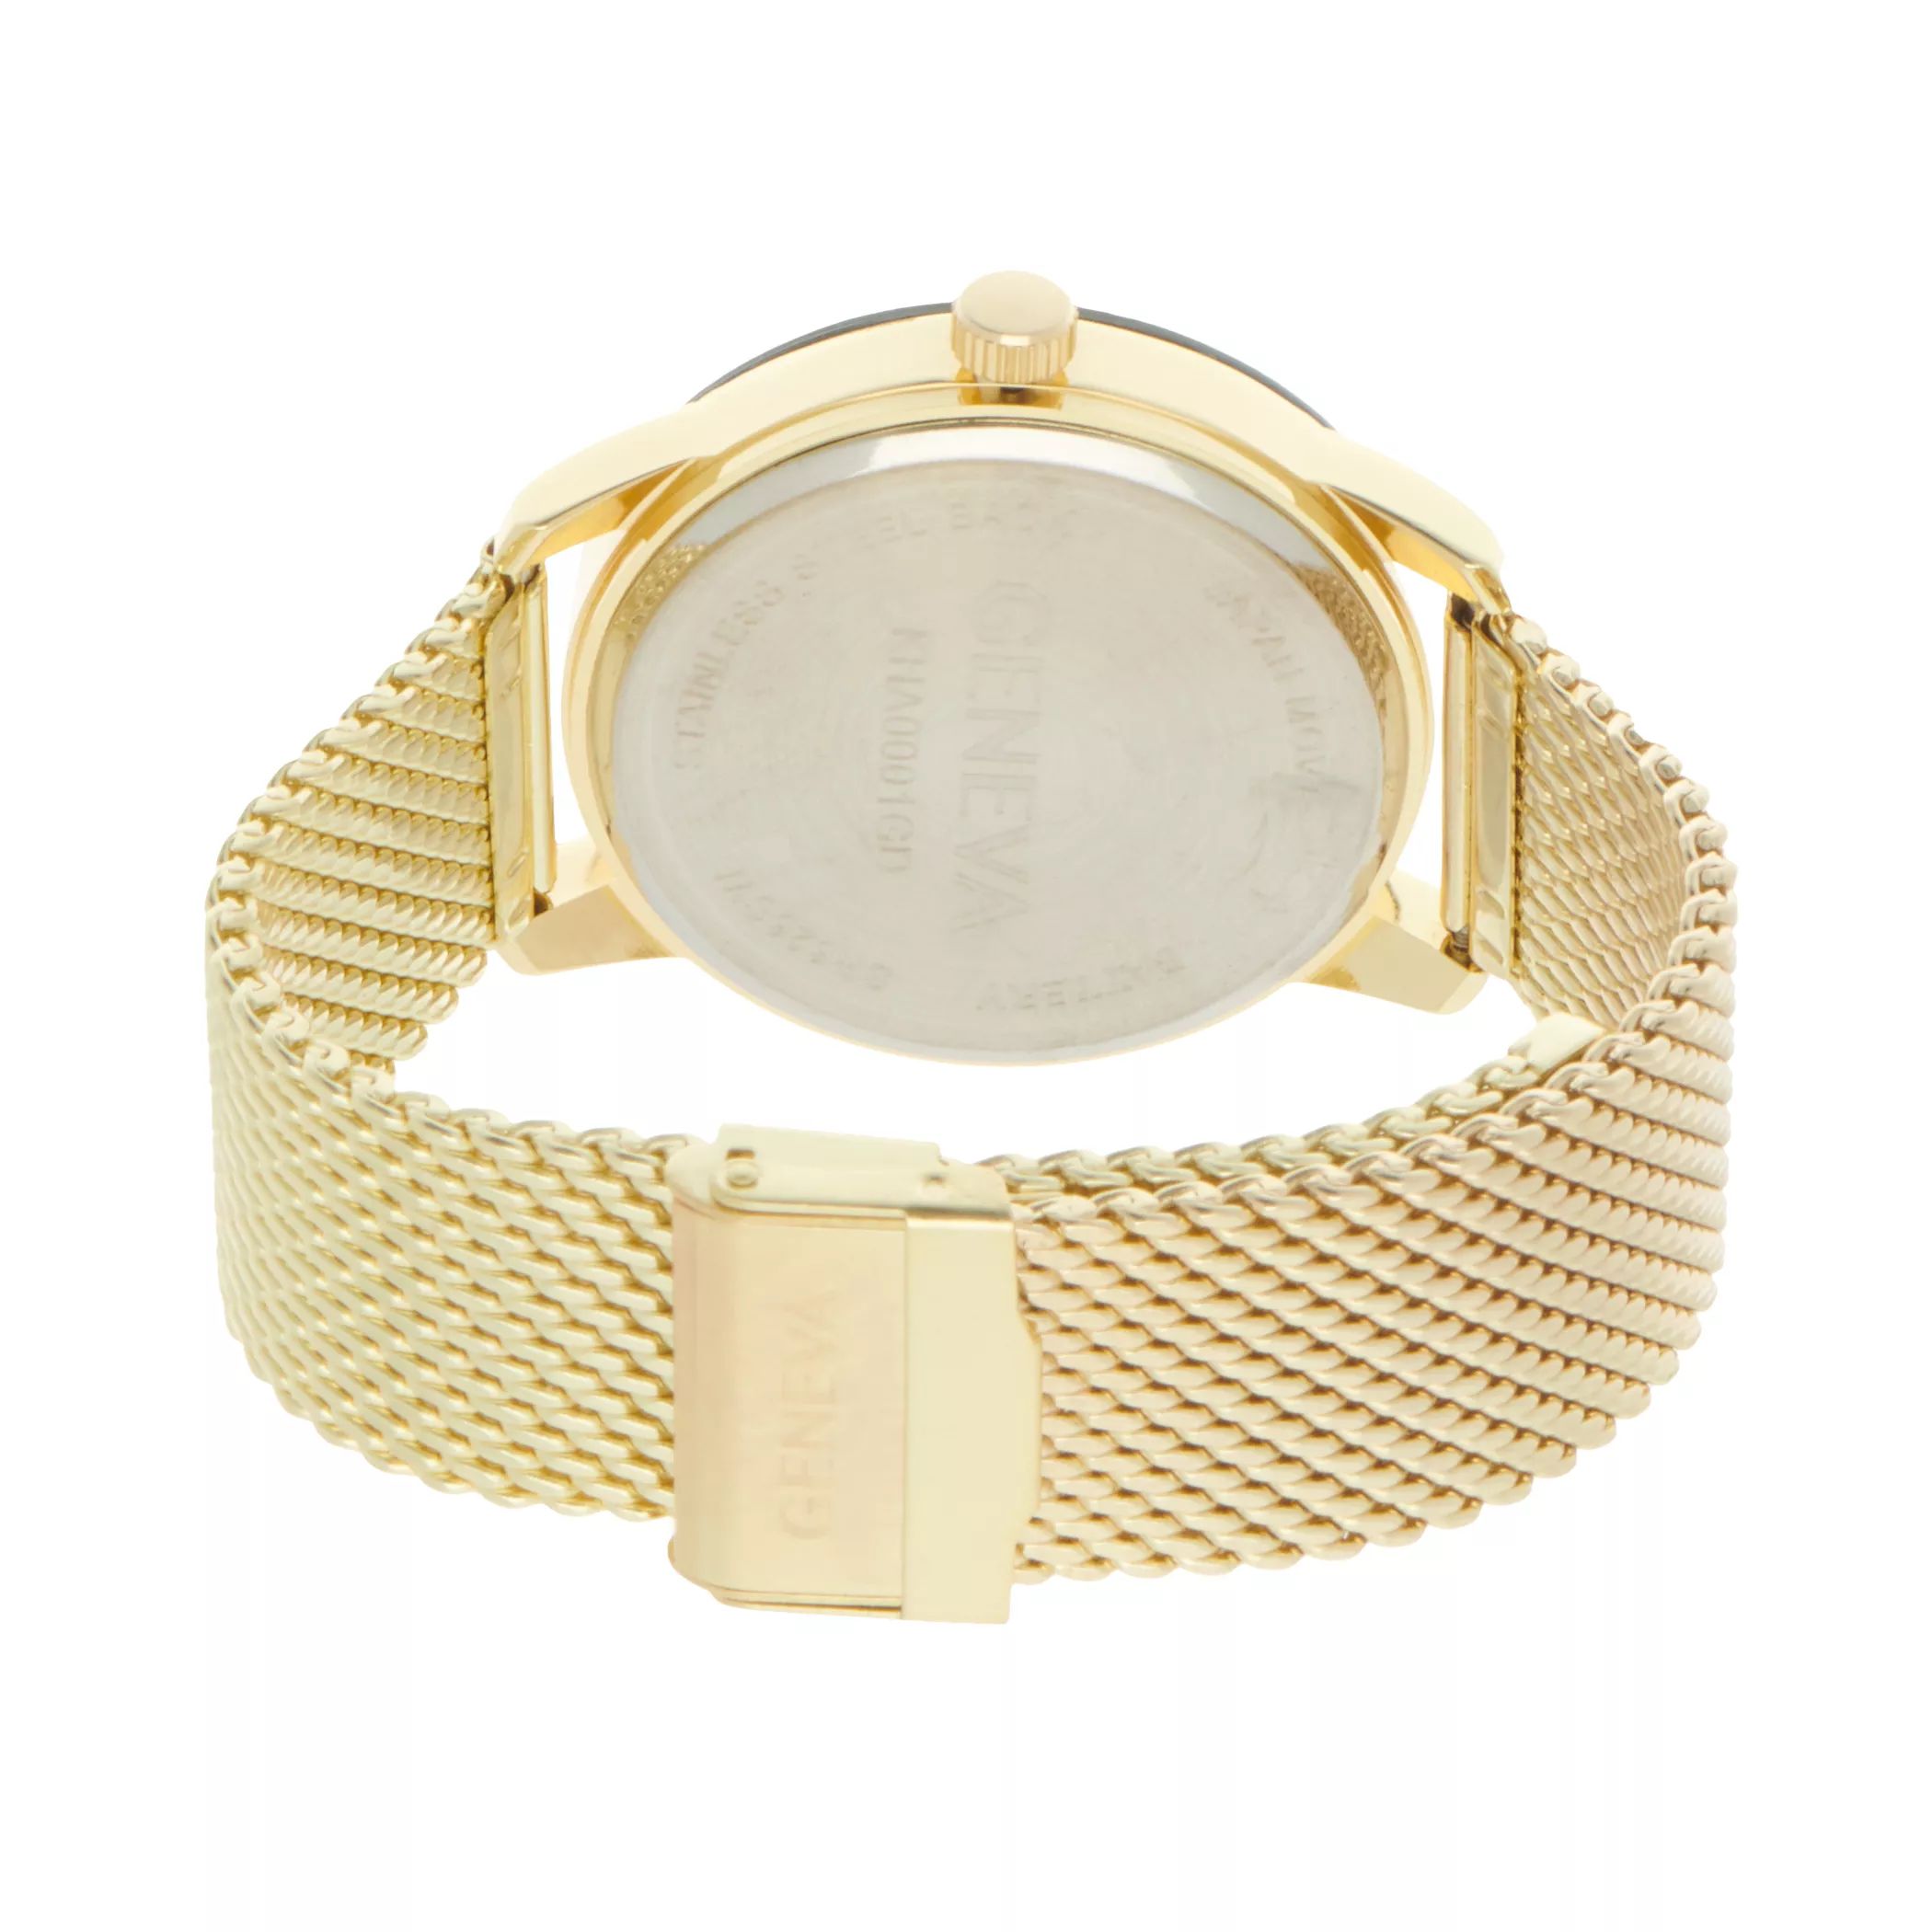 Мужские часы Diamond Accent с сеткой золотистого цвета - KHA0001GD Geneva geneva 1 10 000